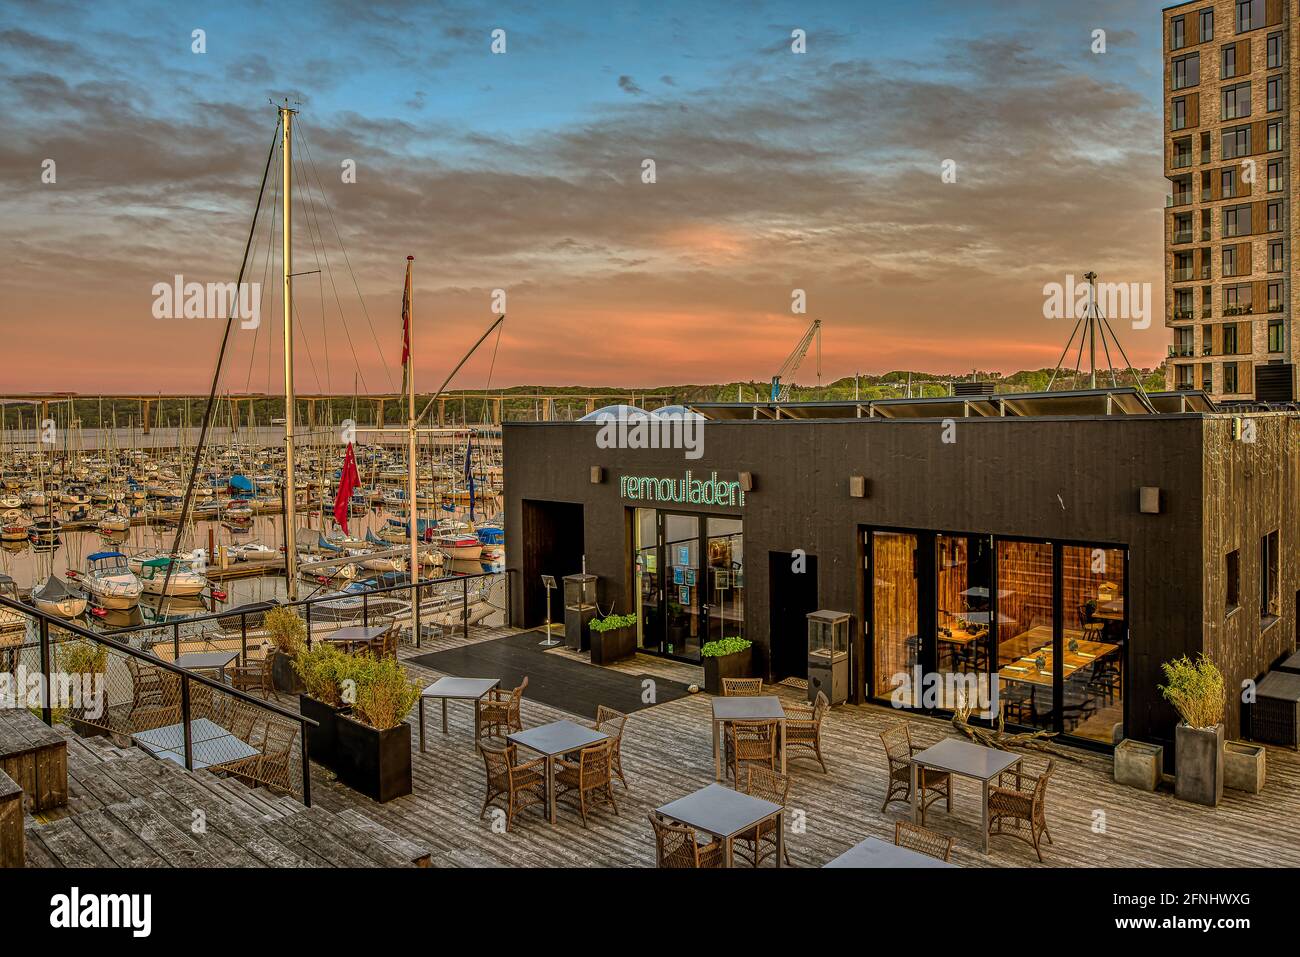 Das Gourmet-Restaurant Remouladen in einem sanften Abendlicht im Hafen von Vejle, Dänemark, 10. Mai 2021 Stockfoto